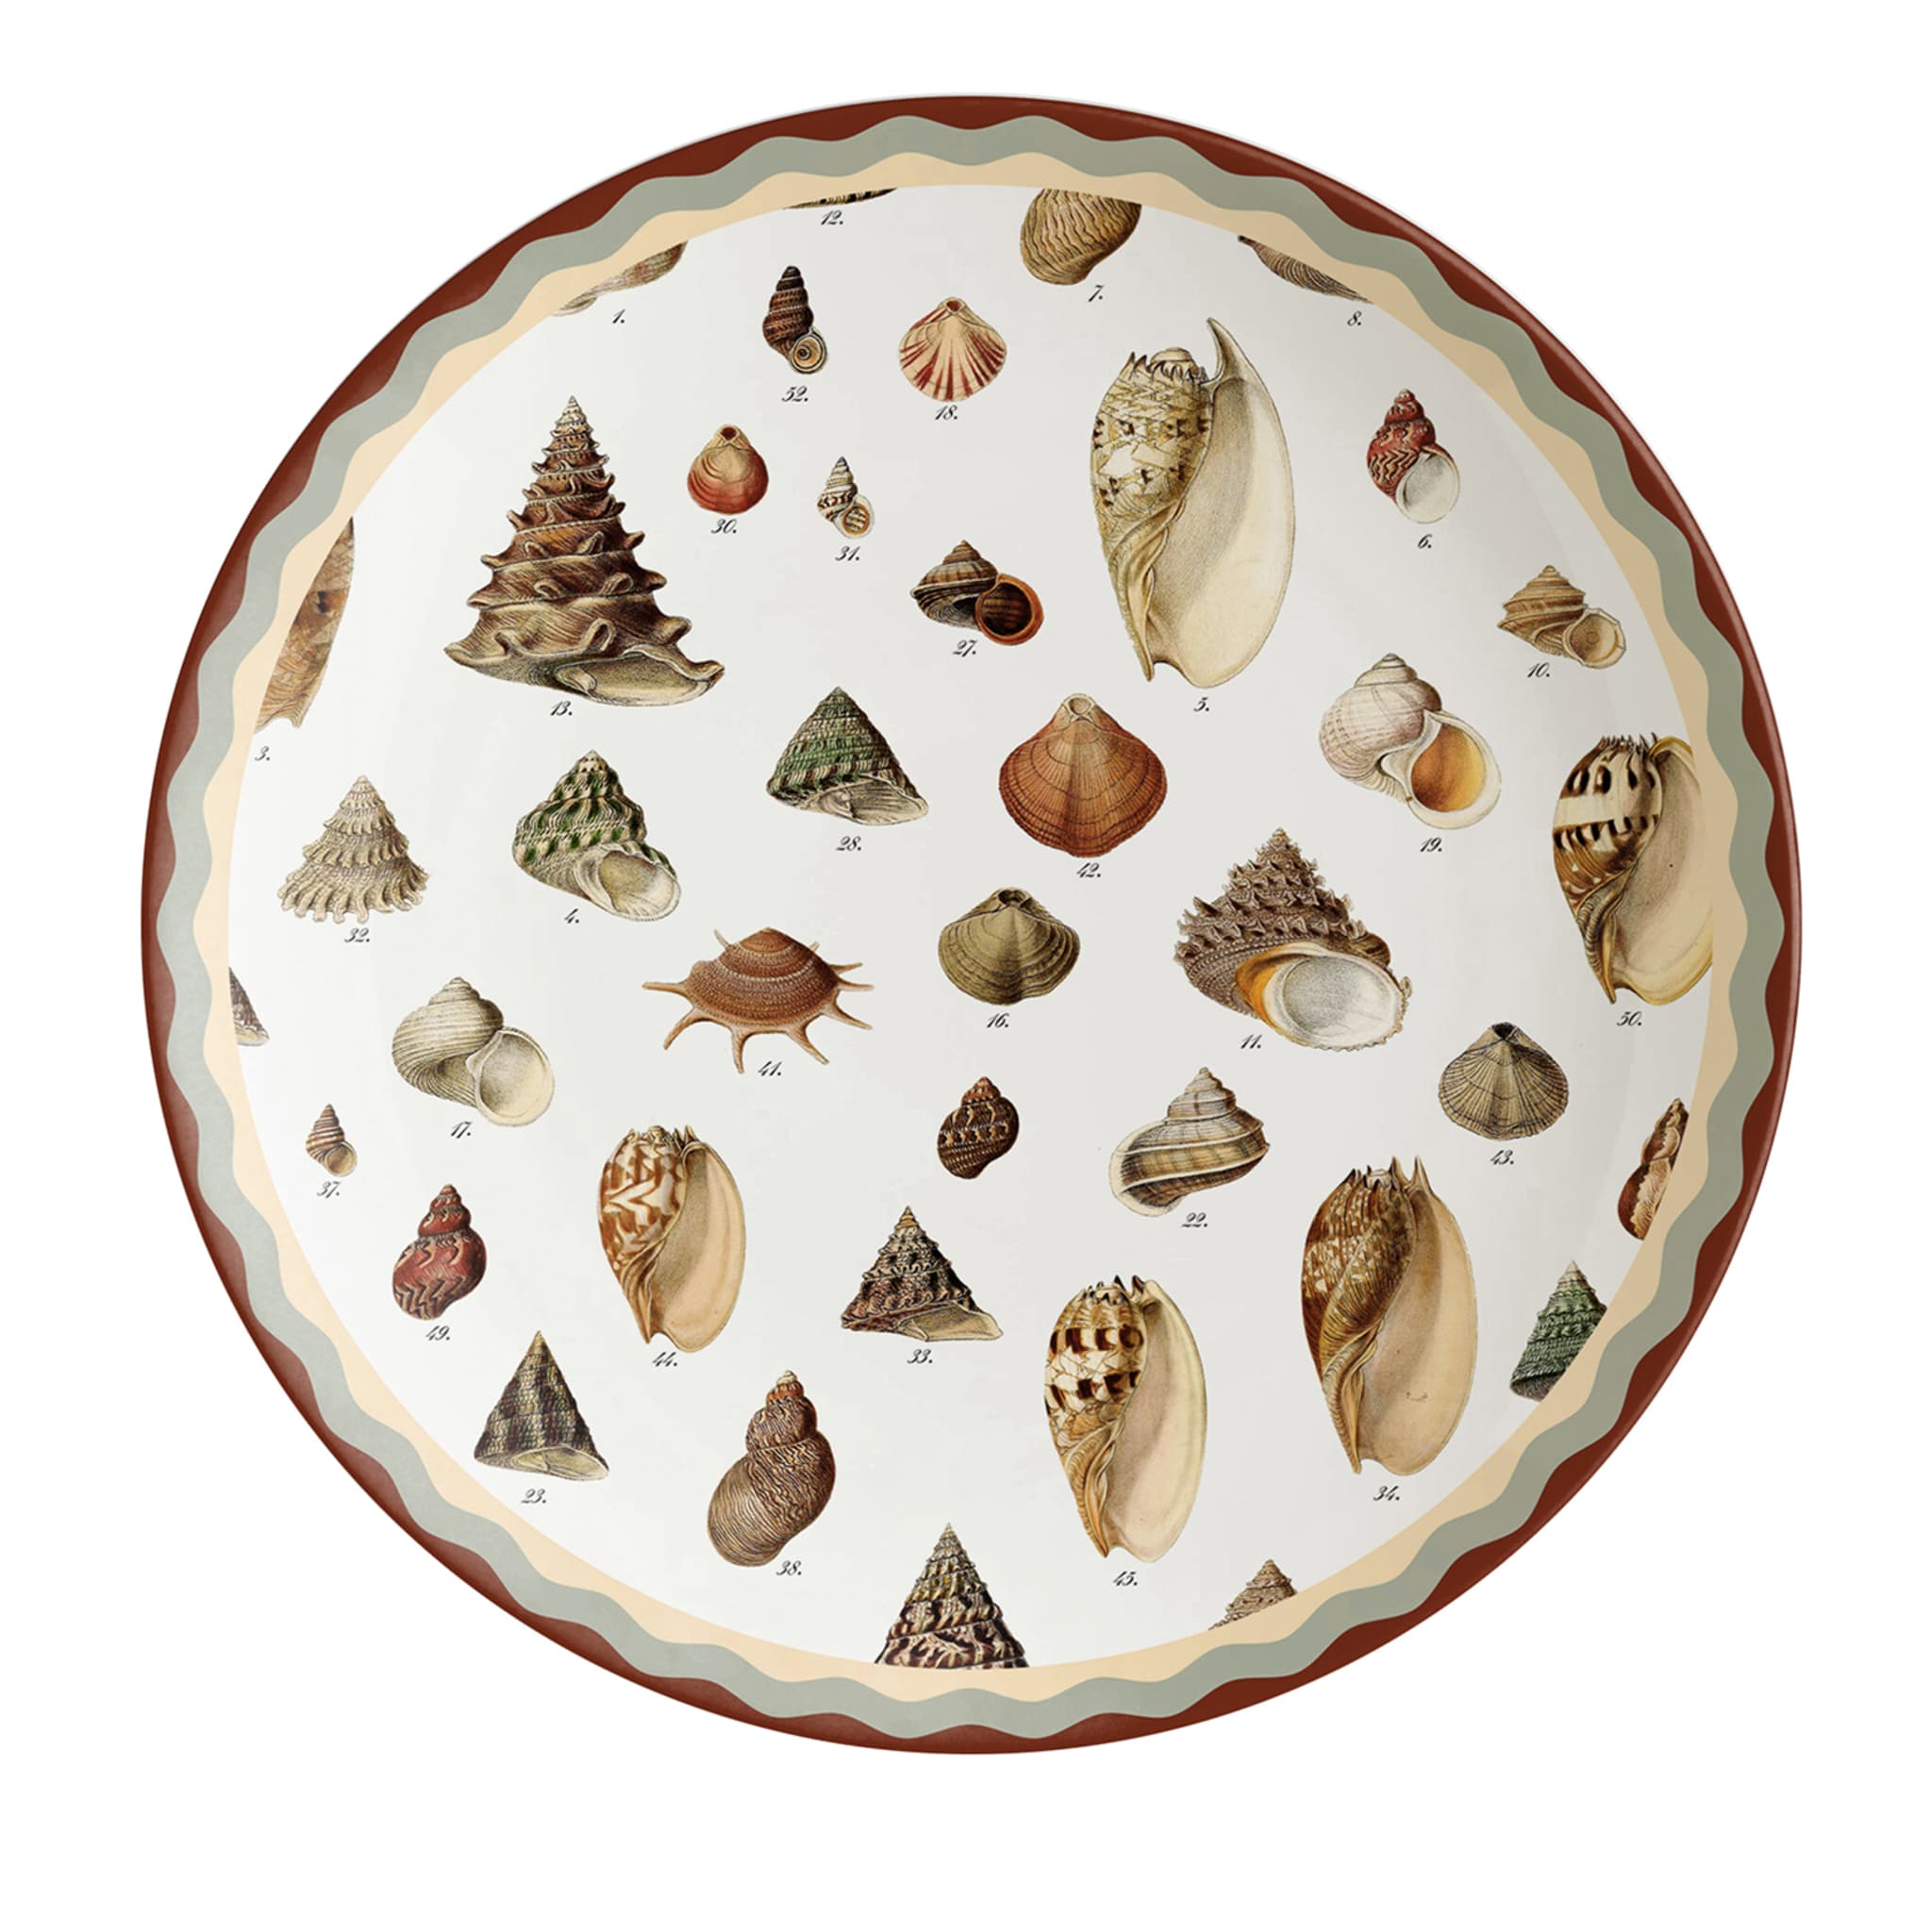 Cabinet De Curiosités Porcelain Dinner Plate With Shells - Main view